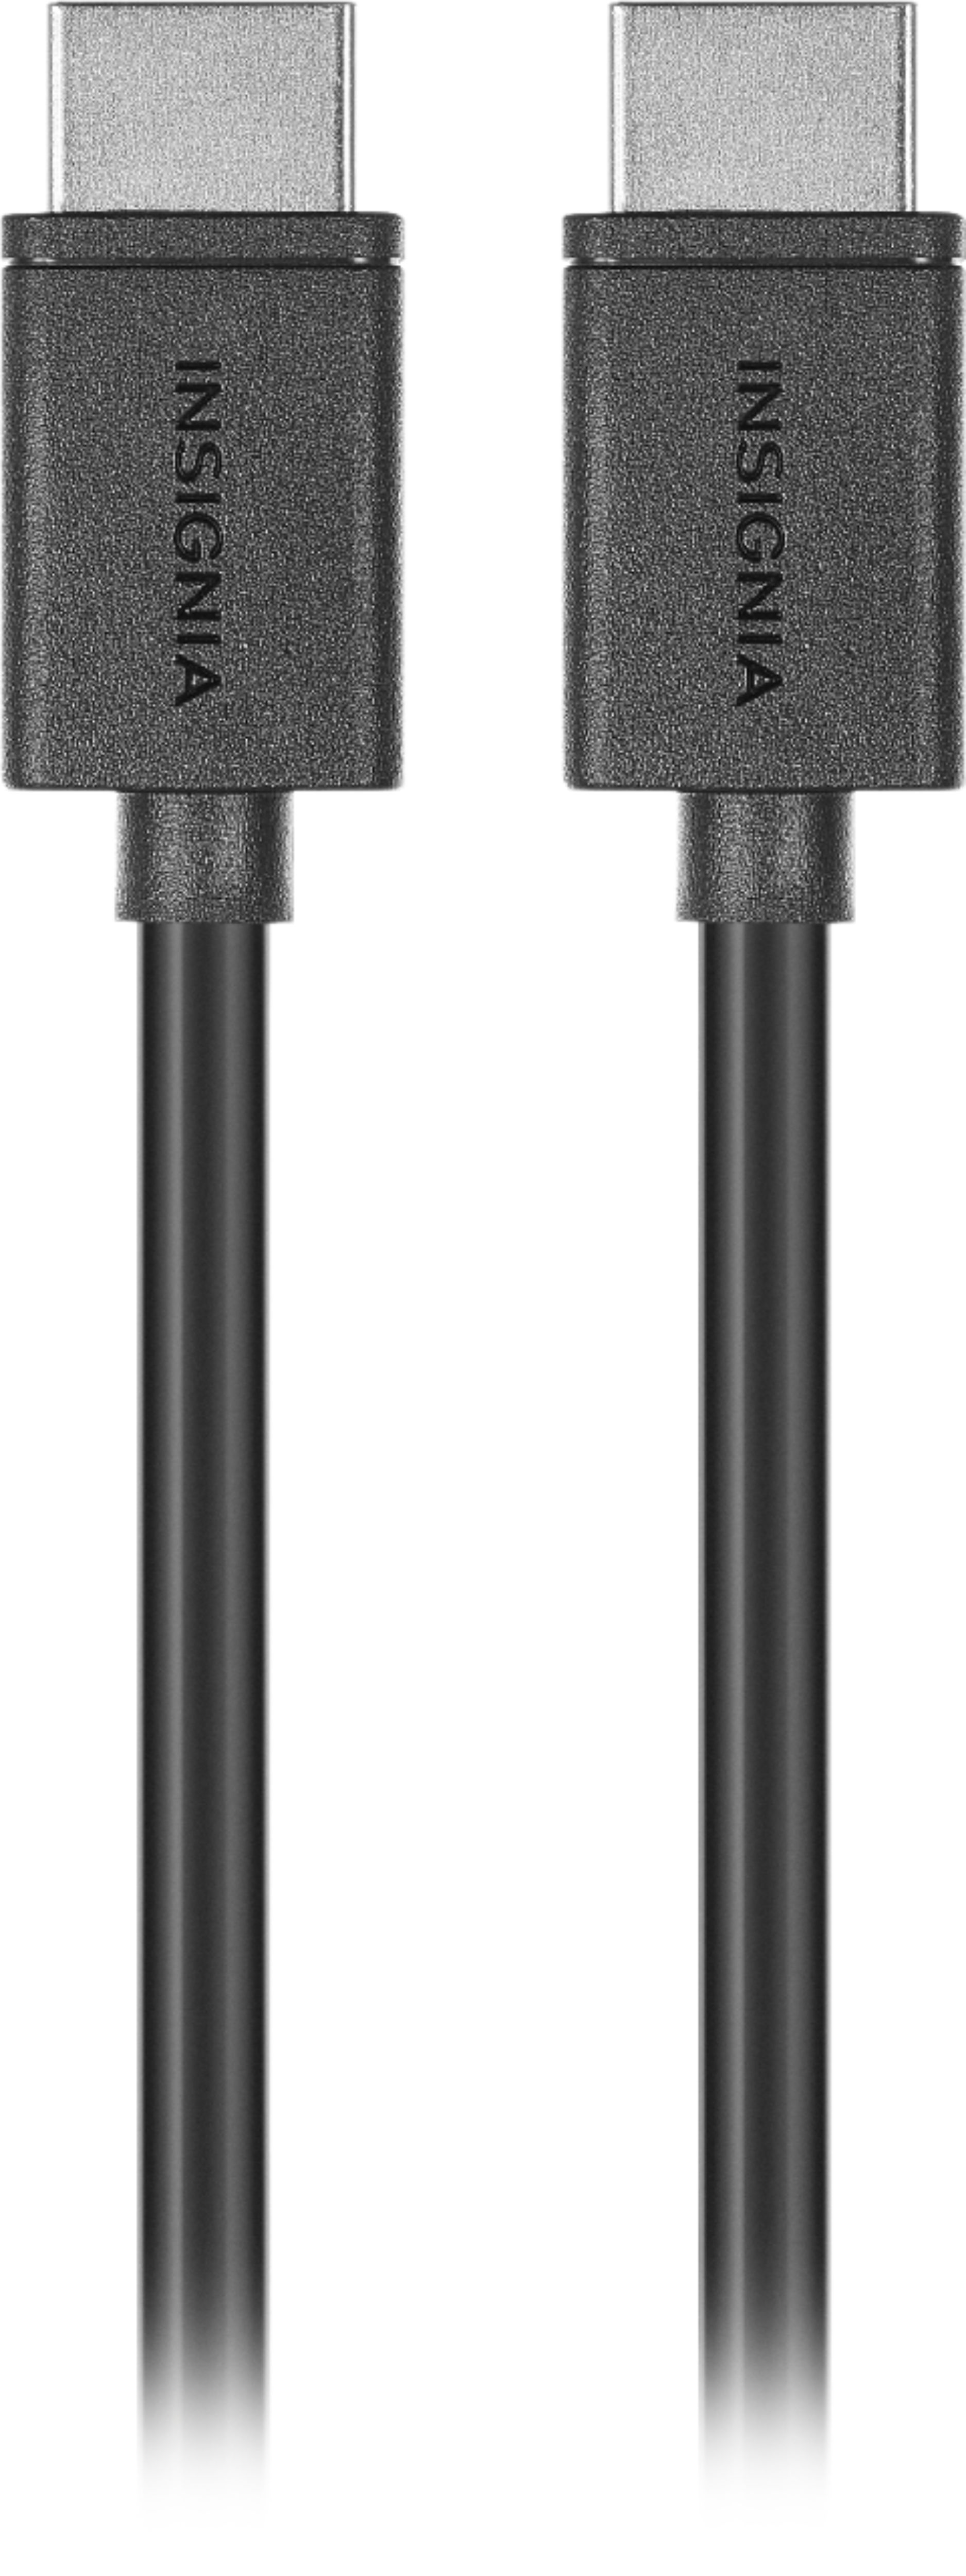 HDMI Pro-Grade 4K Cable 8m (HD SW-HDMI-8M), HDMI